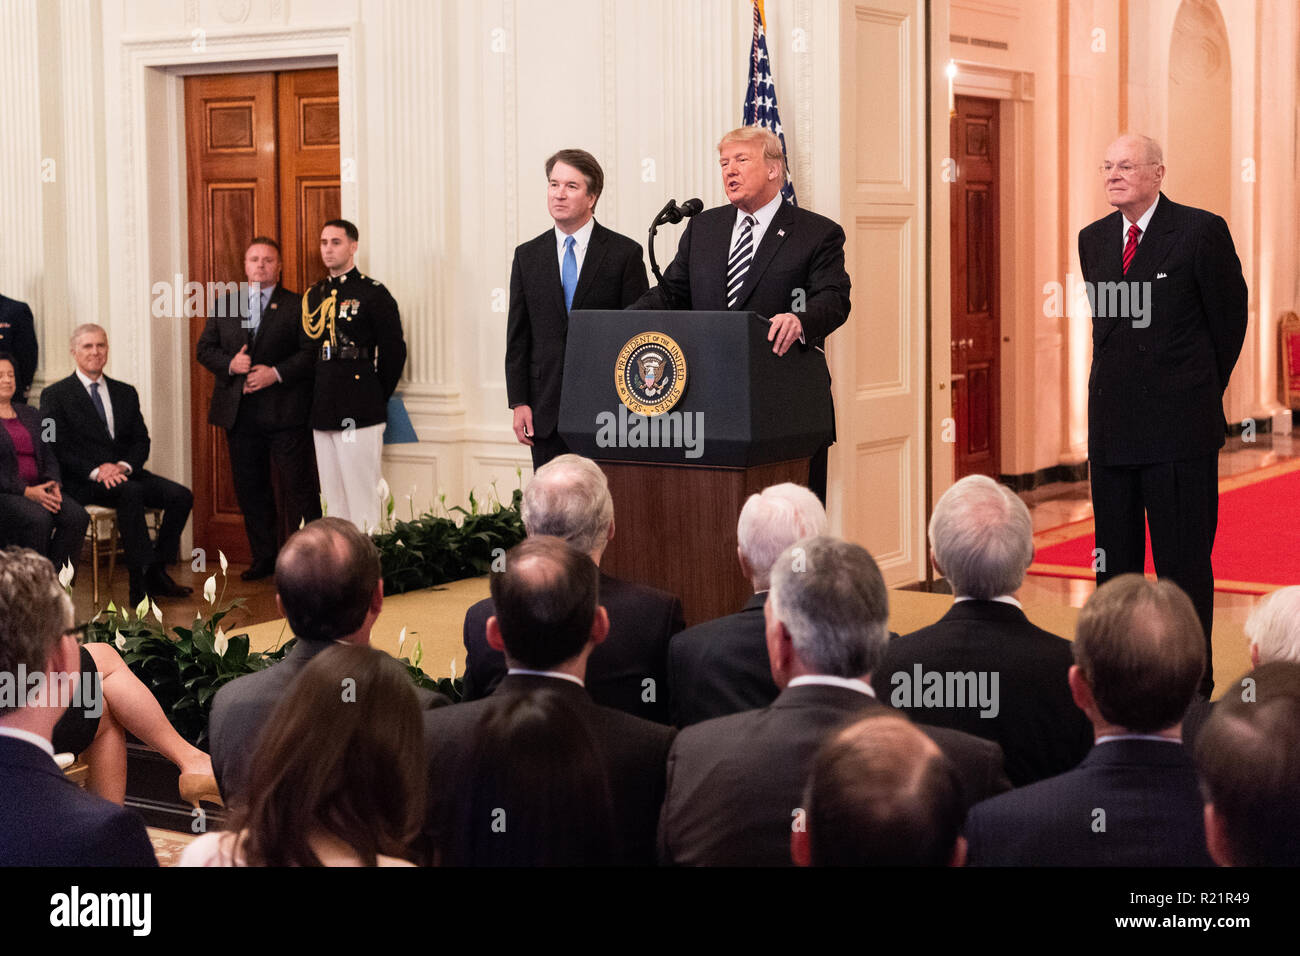 Präsident Donald Trump, Brett Kavanaugh und ehemaligen Obersten Gerichtshofs Anthony Kennedy bei der Vereidigung von Brett Kavanaugh als Gerechtigkeit Verknüpfen von Th Stockfoto